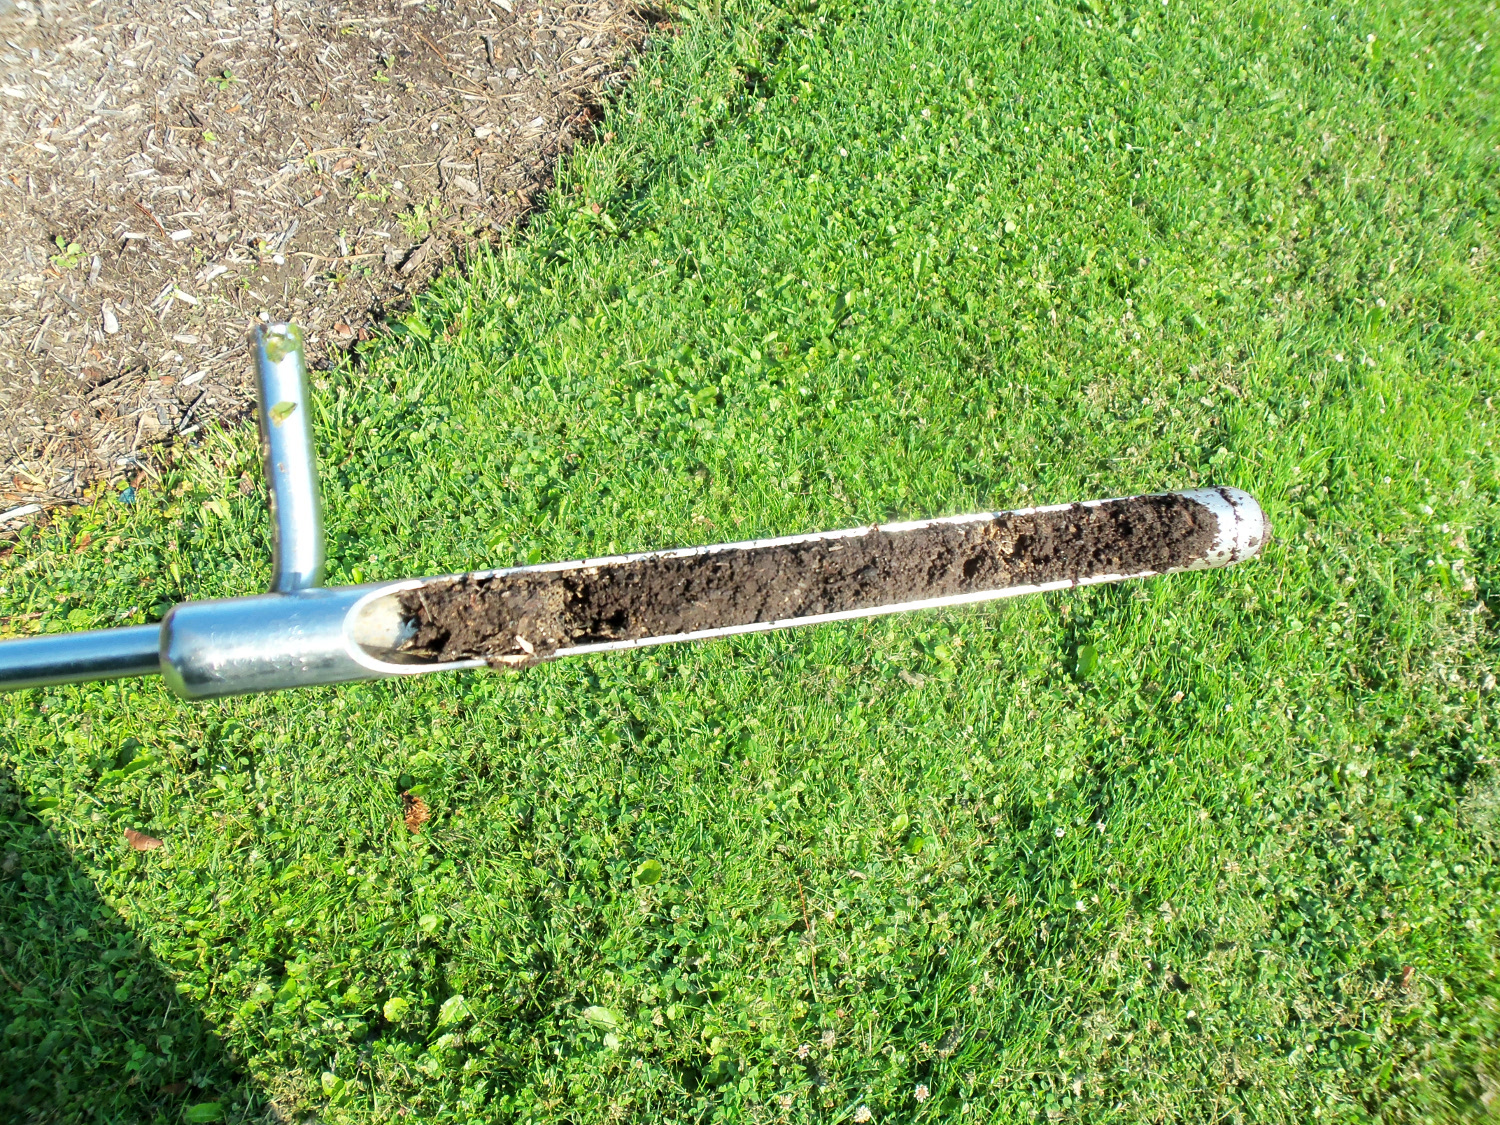 A soil core sample